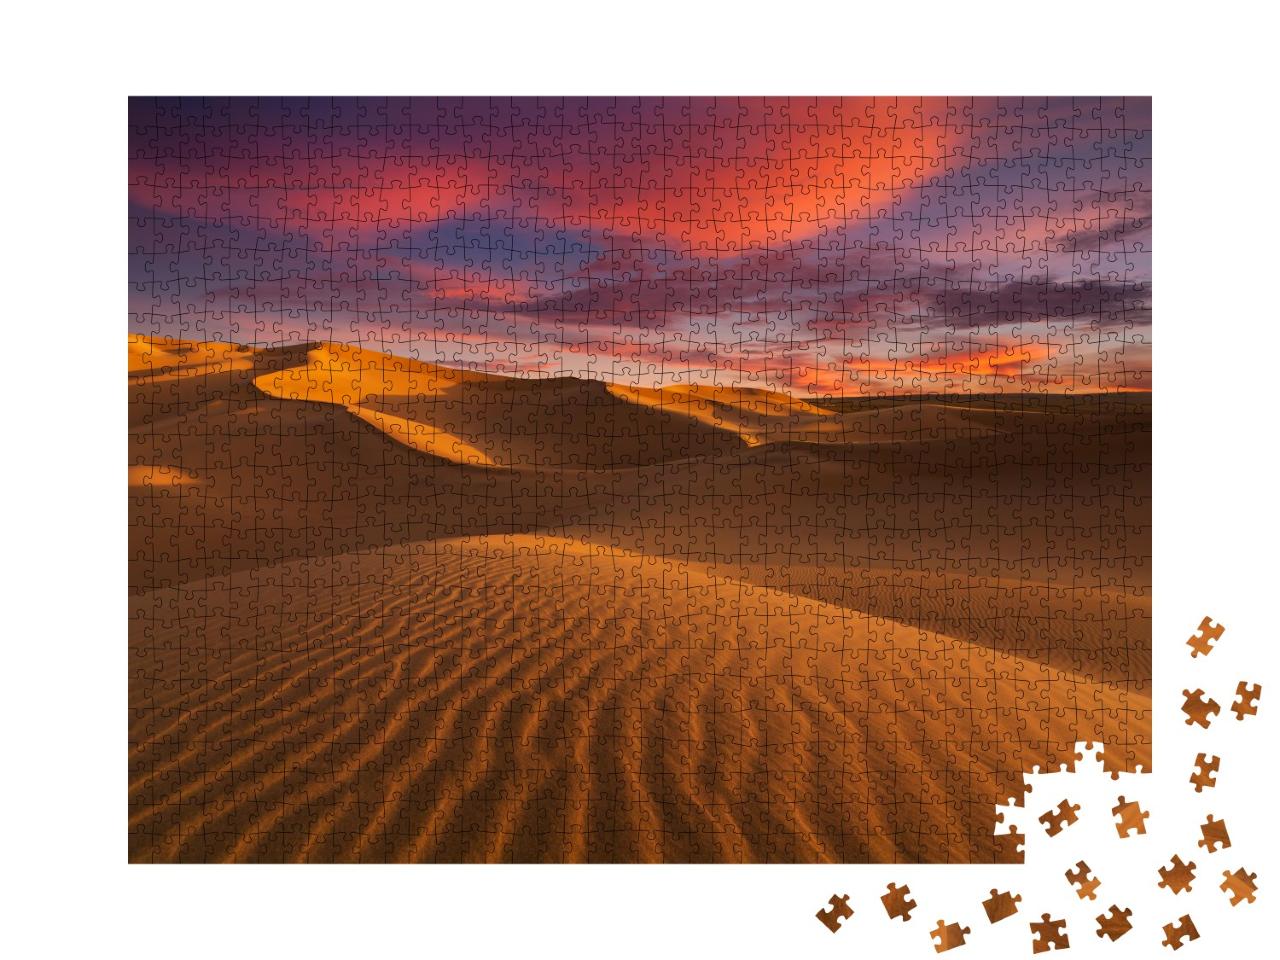 Puzzle de 1000 pièces « Dunes de sable dans le désert du Sahara »